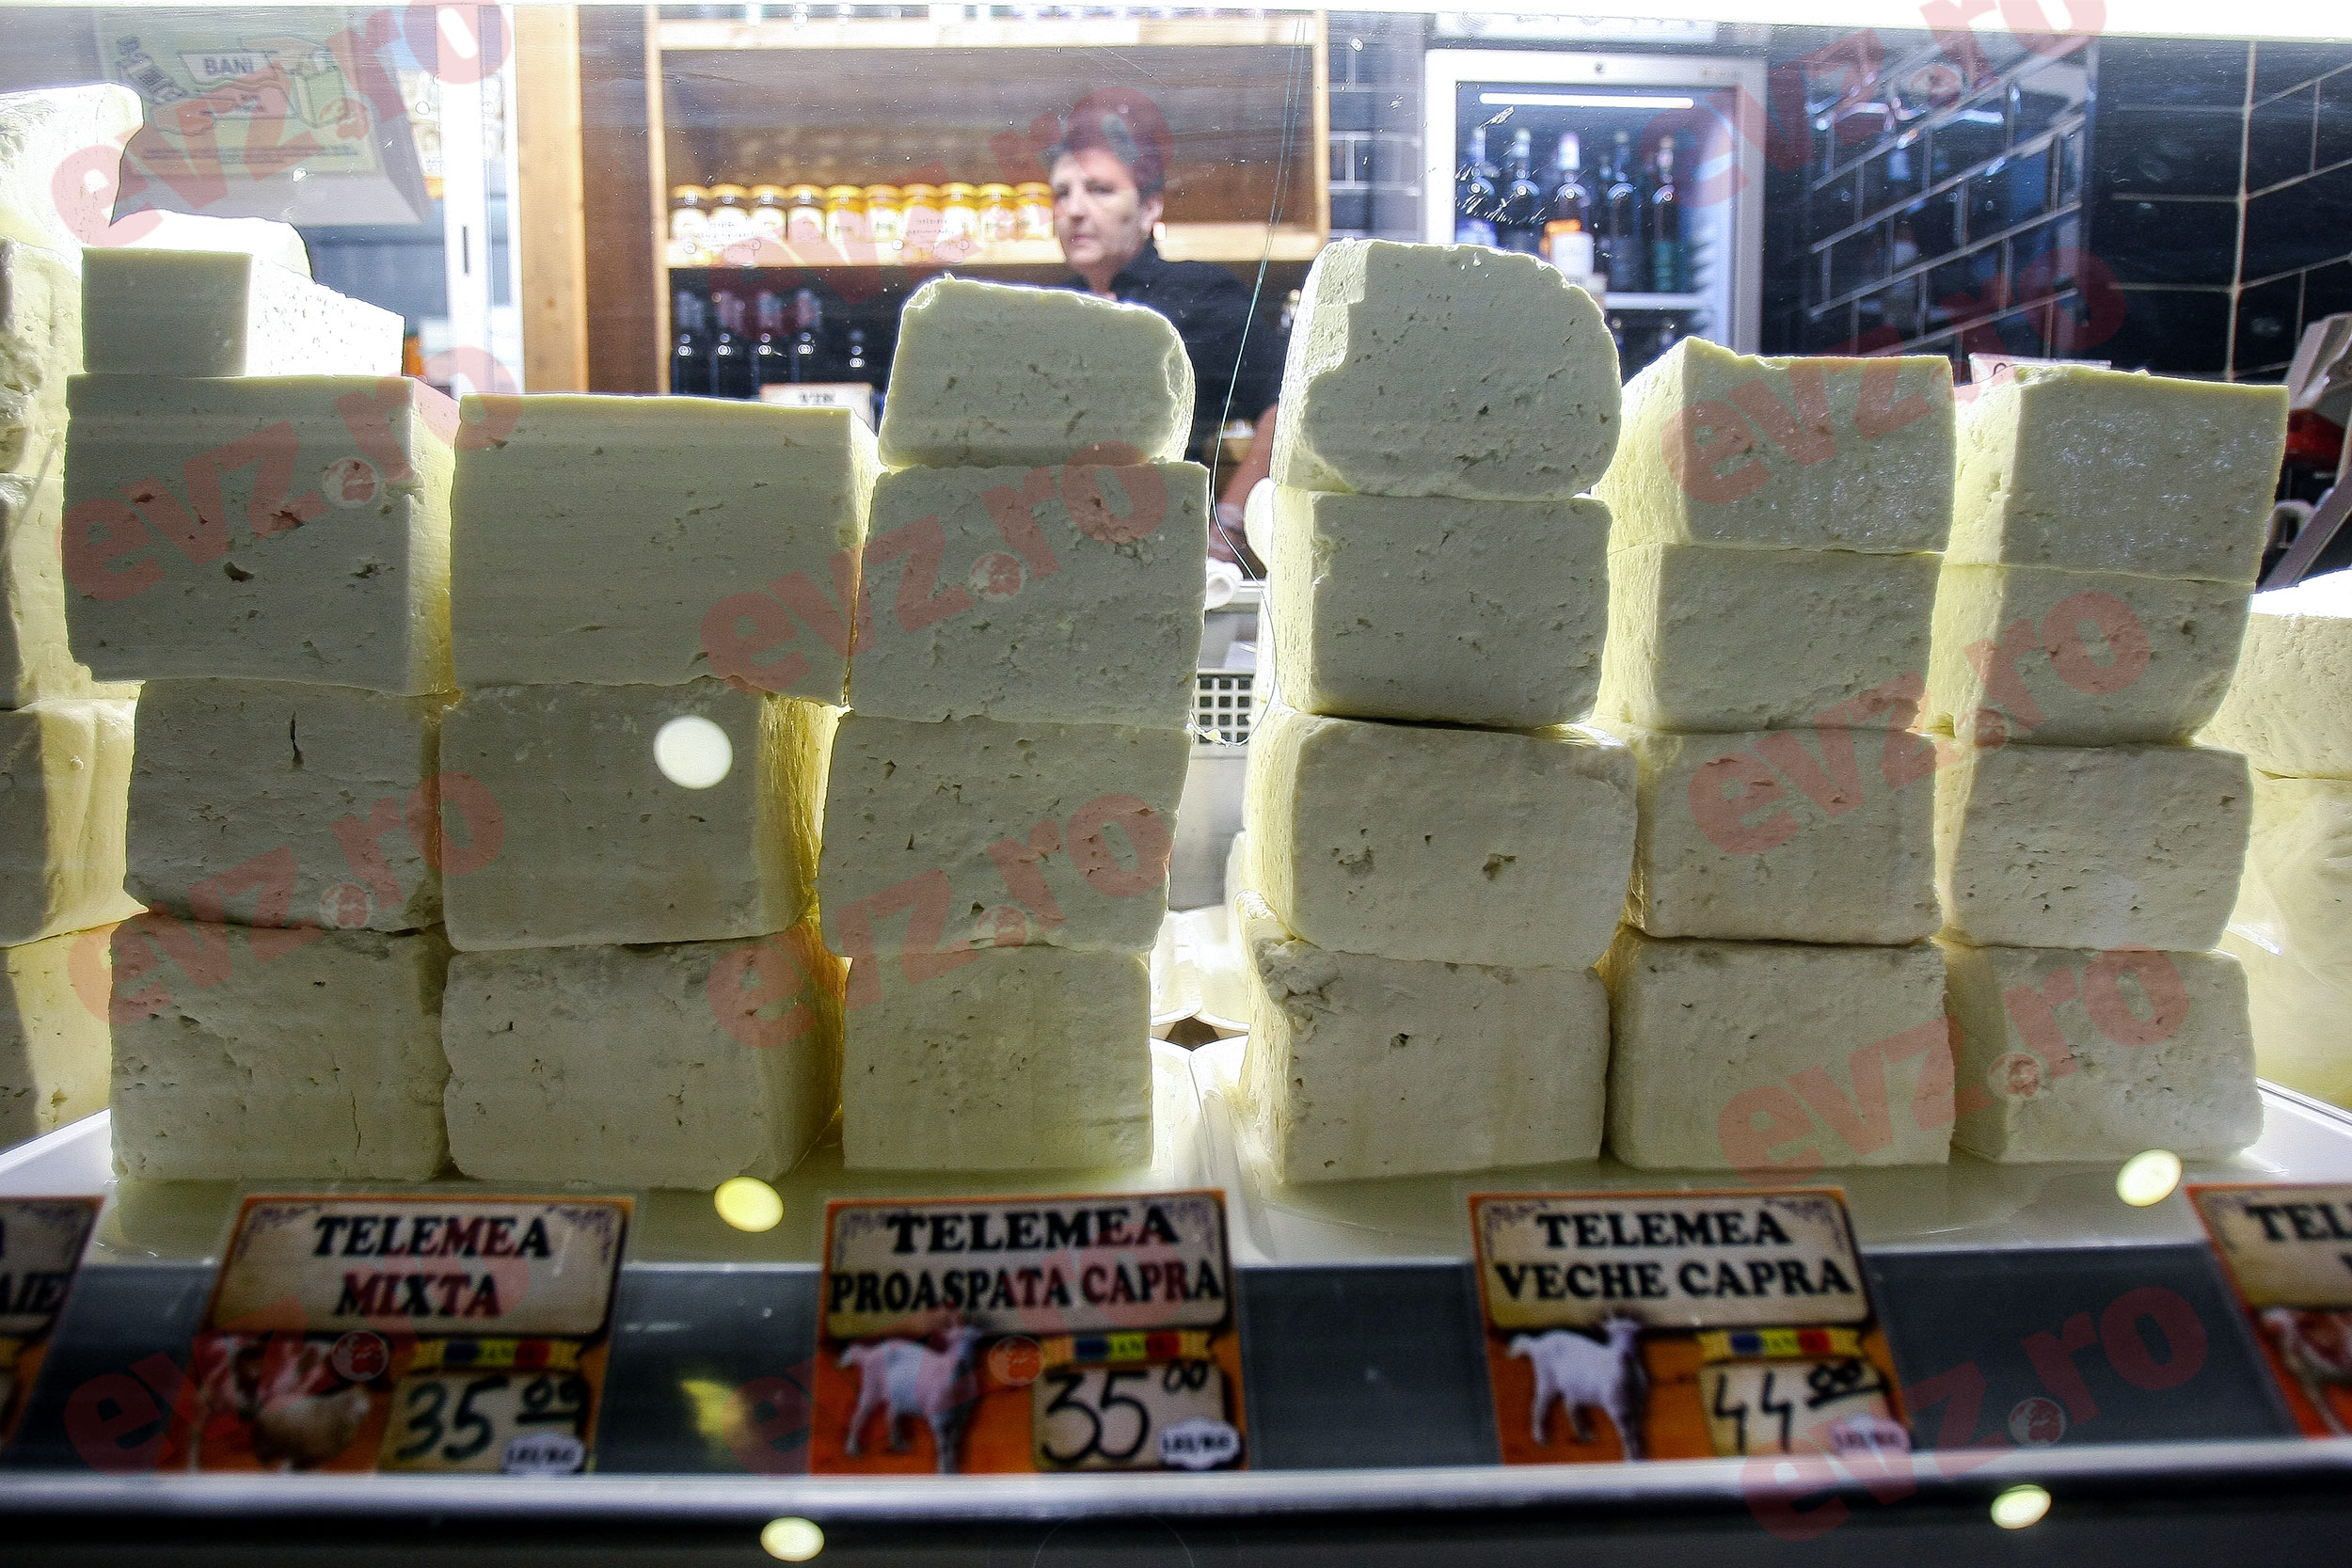 In Italia puoi trovare il miglior formaggio del mondo.